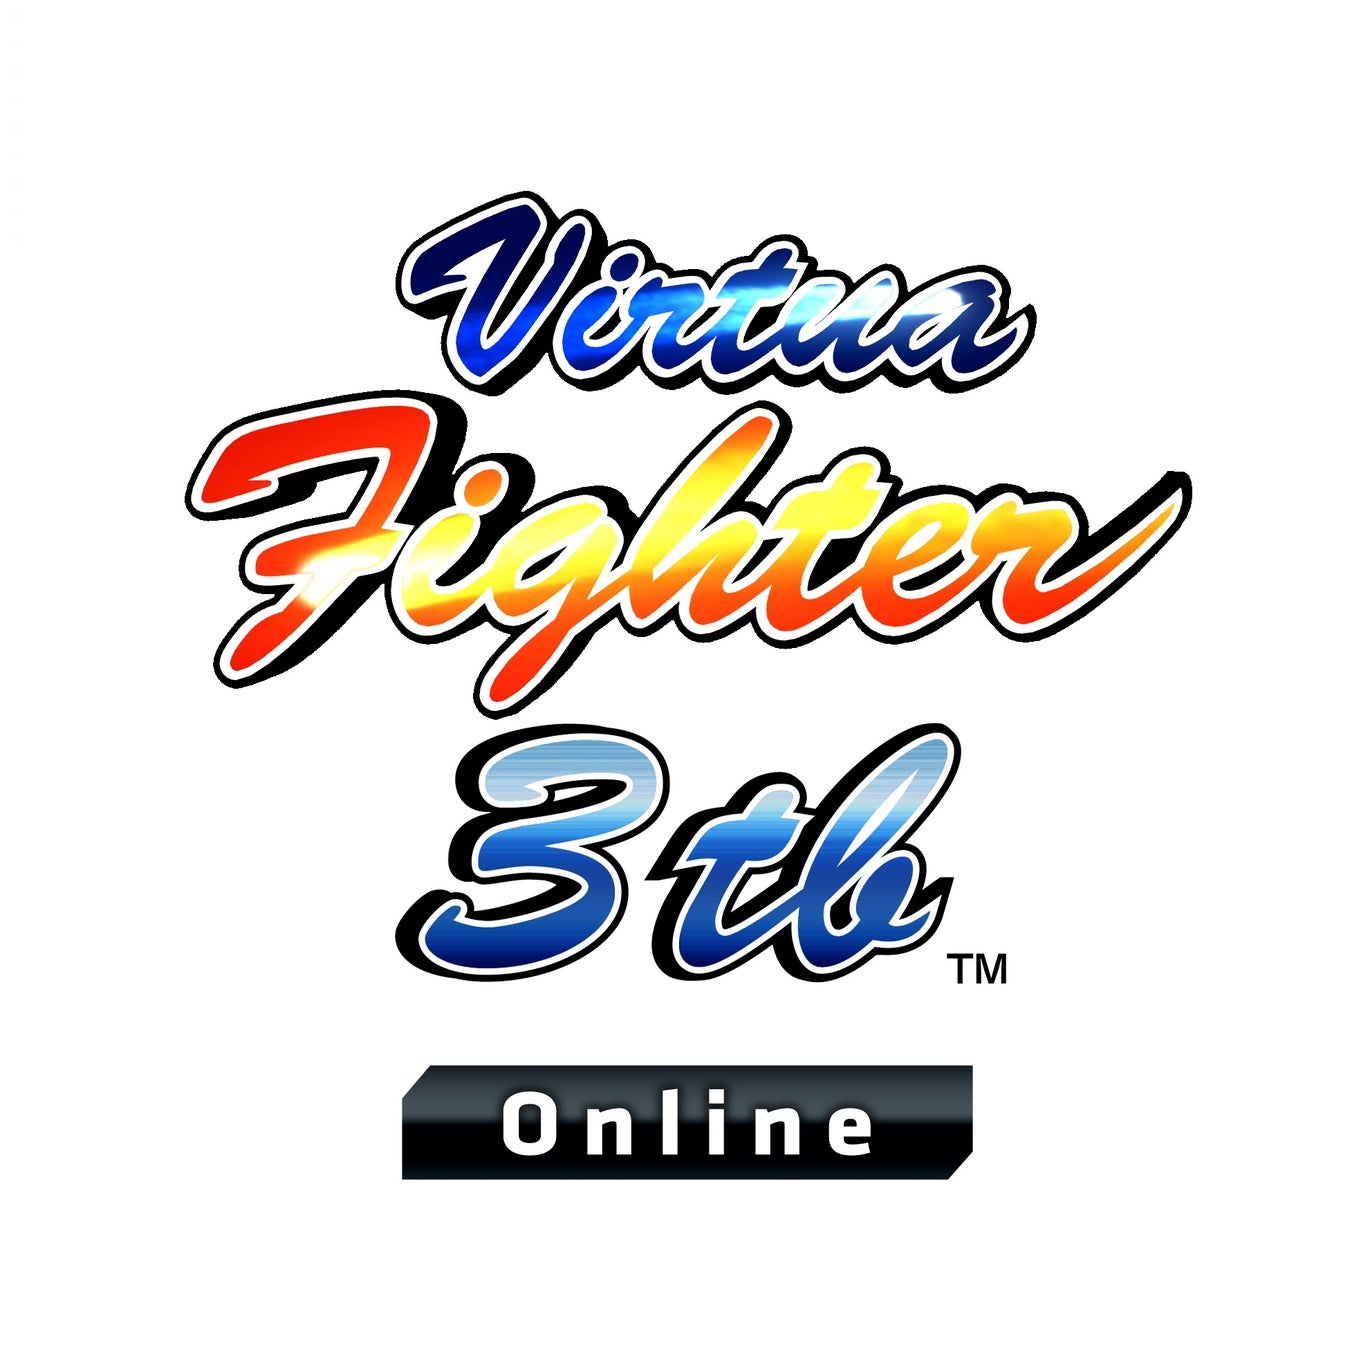 3D対戦格闘ゲーム『Virtua Fighter 3tb』が26年ぶりにゲームセンターに復活！『Virtua Fighter 3tb Online』11月28日（火）より『APM3』で稼働開始！